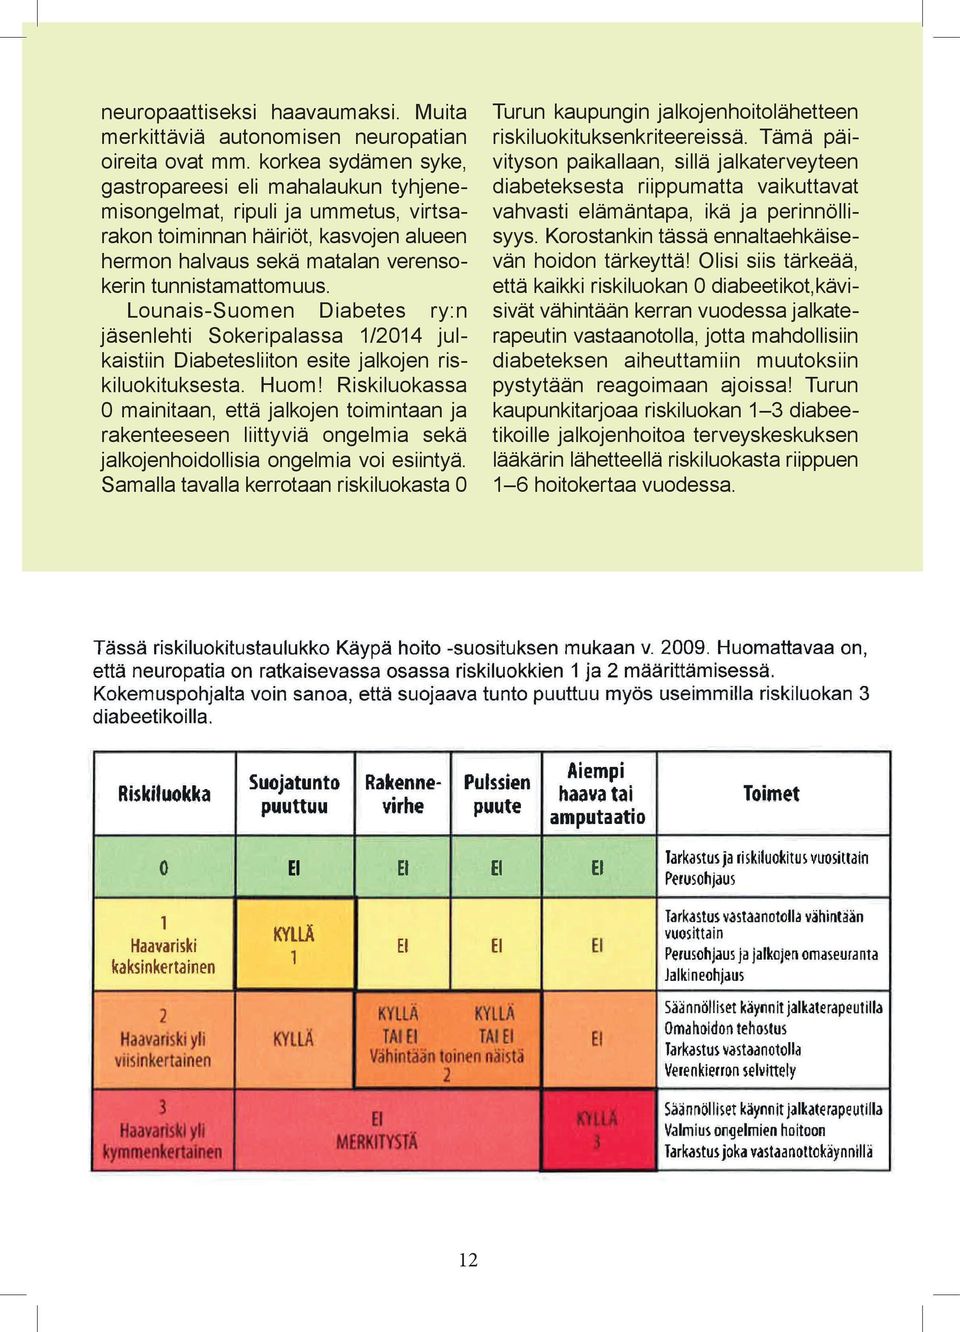 Lounais-Suomen Diabetes ry:n jäsenlehti Sokeripalassa 1/2014 julkaistiin Diabetesliiton esite jalkojen riskiluokituksesta. Huom!